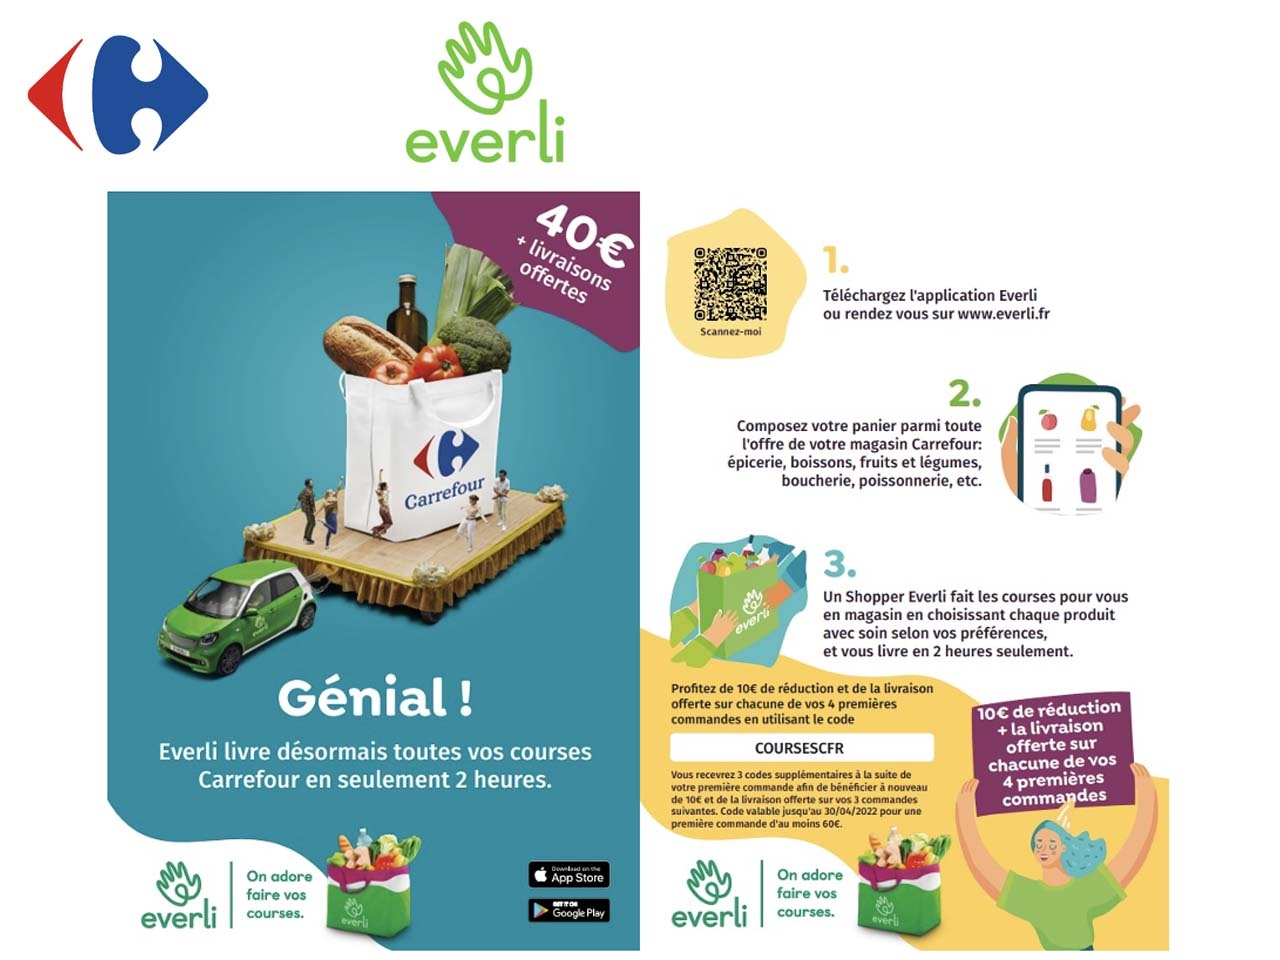 Everli et Carrefour étendent leur partenariat à 10 villes françaises, dont Paris